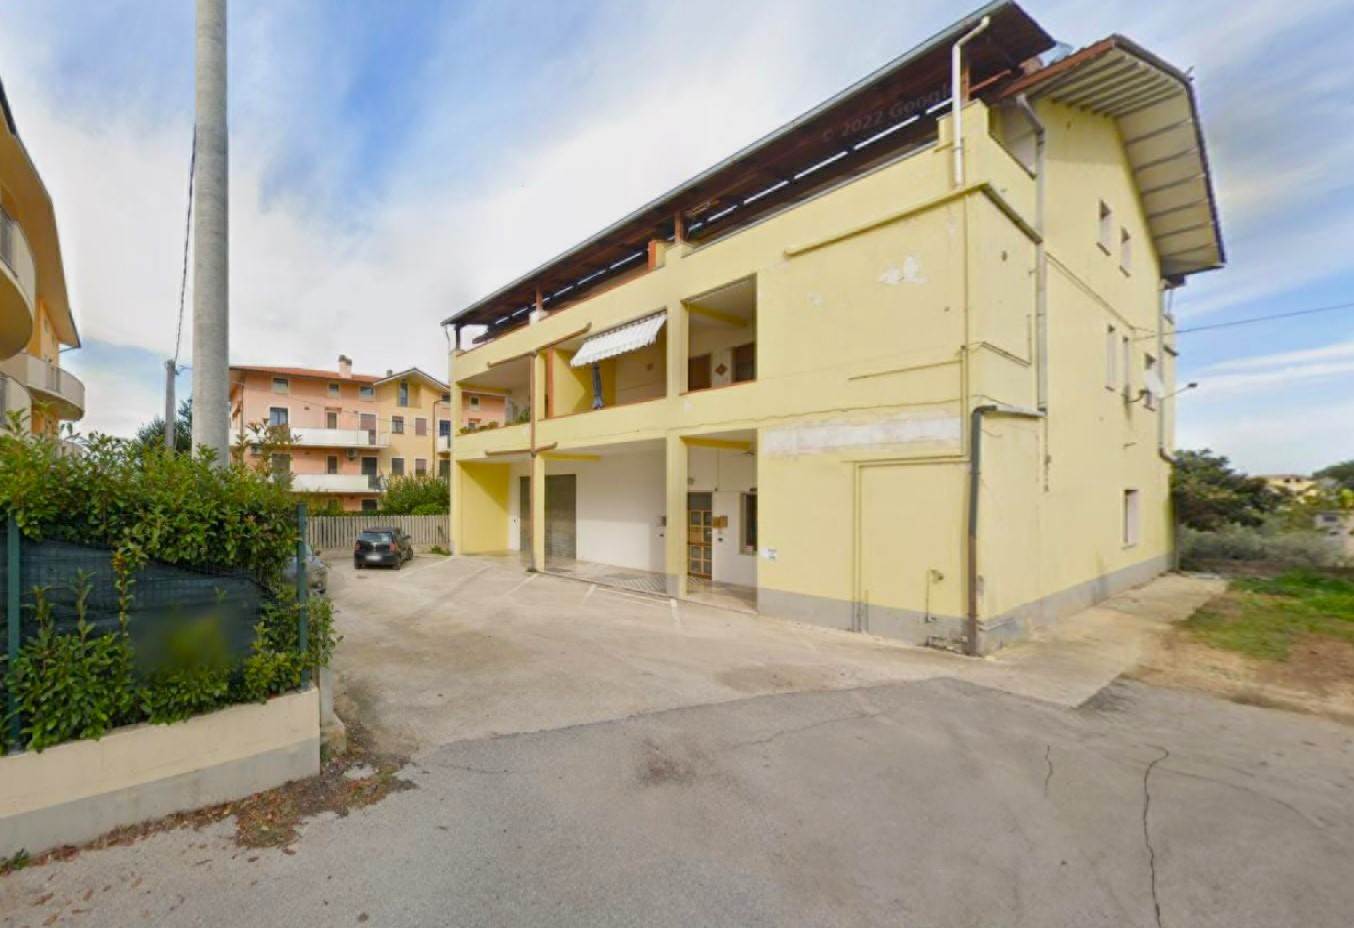 Appartamento in vendita a Paglieta, 4 locali, prezzo € 56.000 | PortaleAgenzieImmobiliari.it